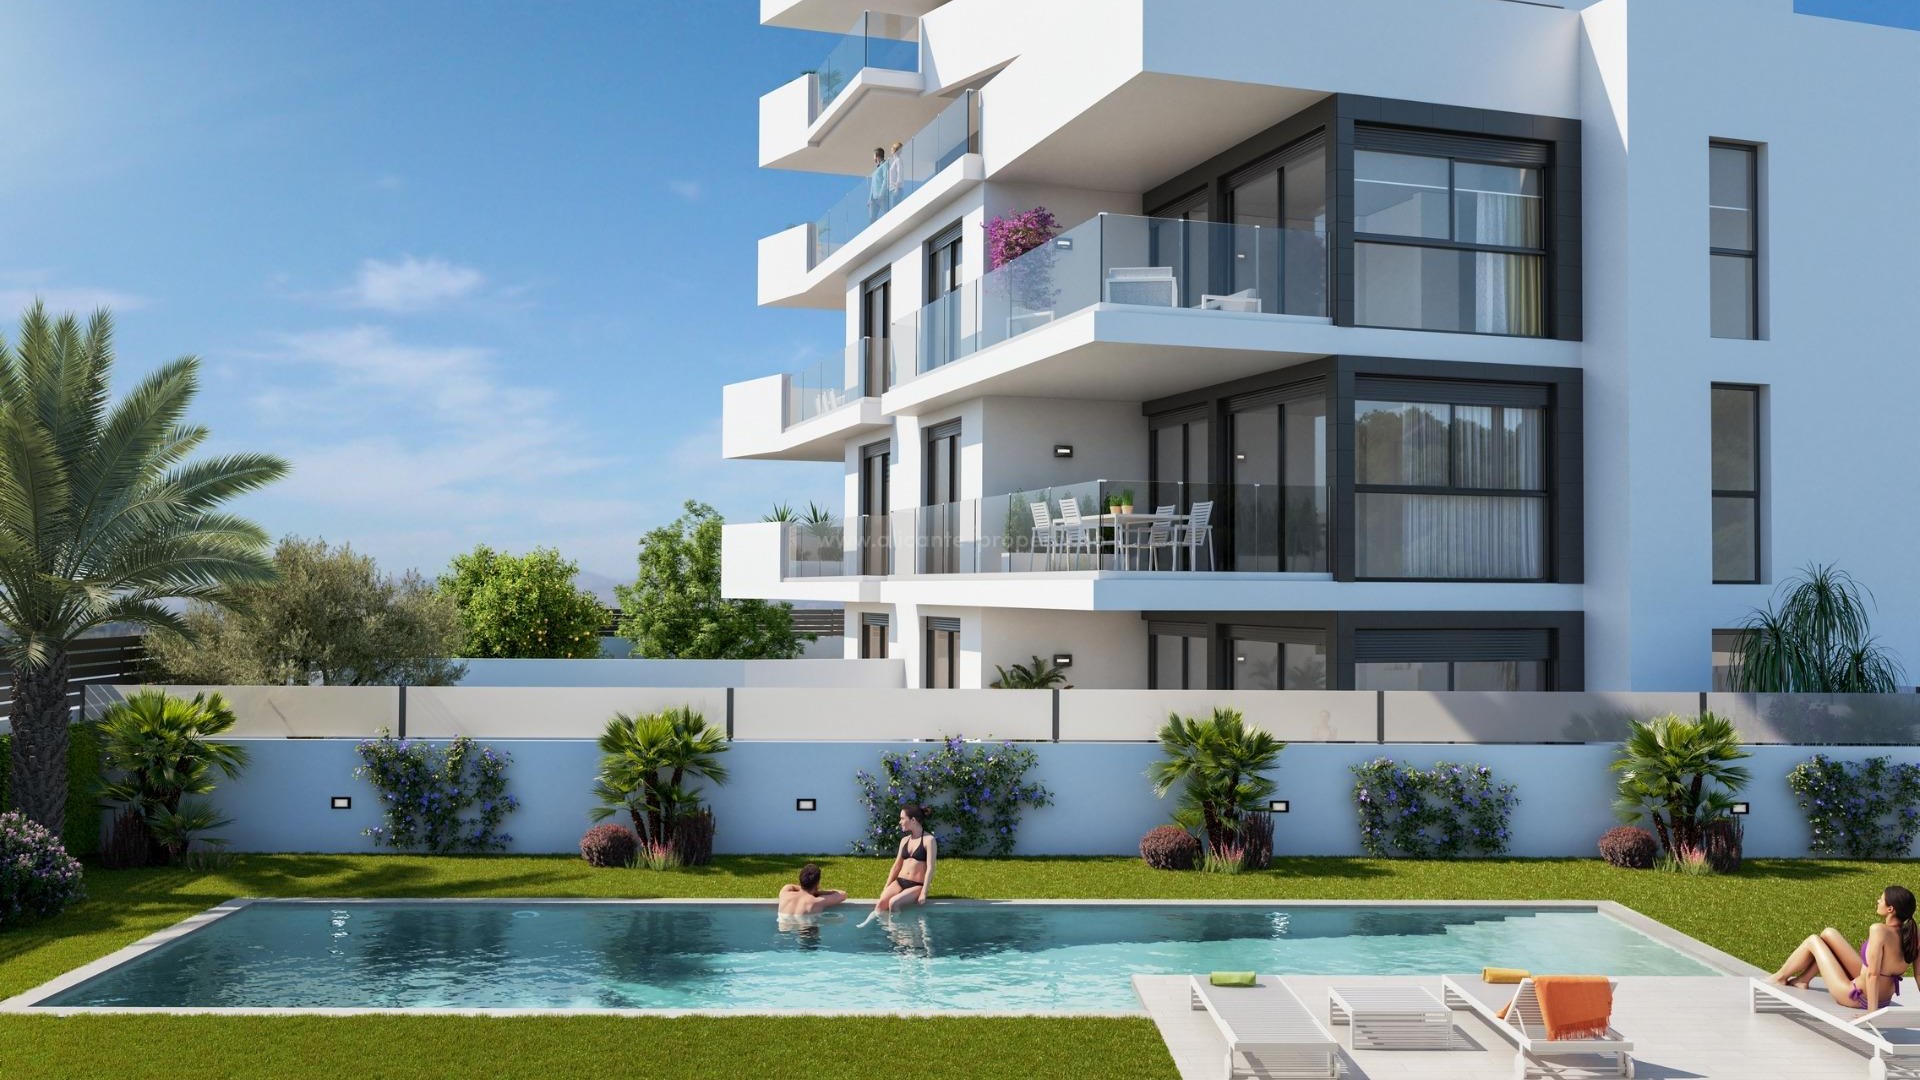 Nye leiligheter og toppleiligheter i Guardamar del Segura, 3 soverom, 2 bad, romslige terrasser, åpen kjøkkenløsning med stue, toppleilighet med solarium